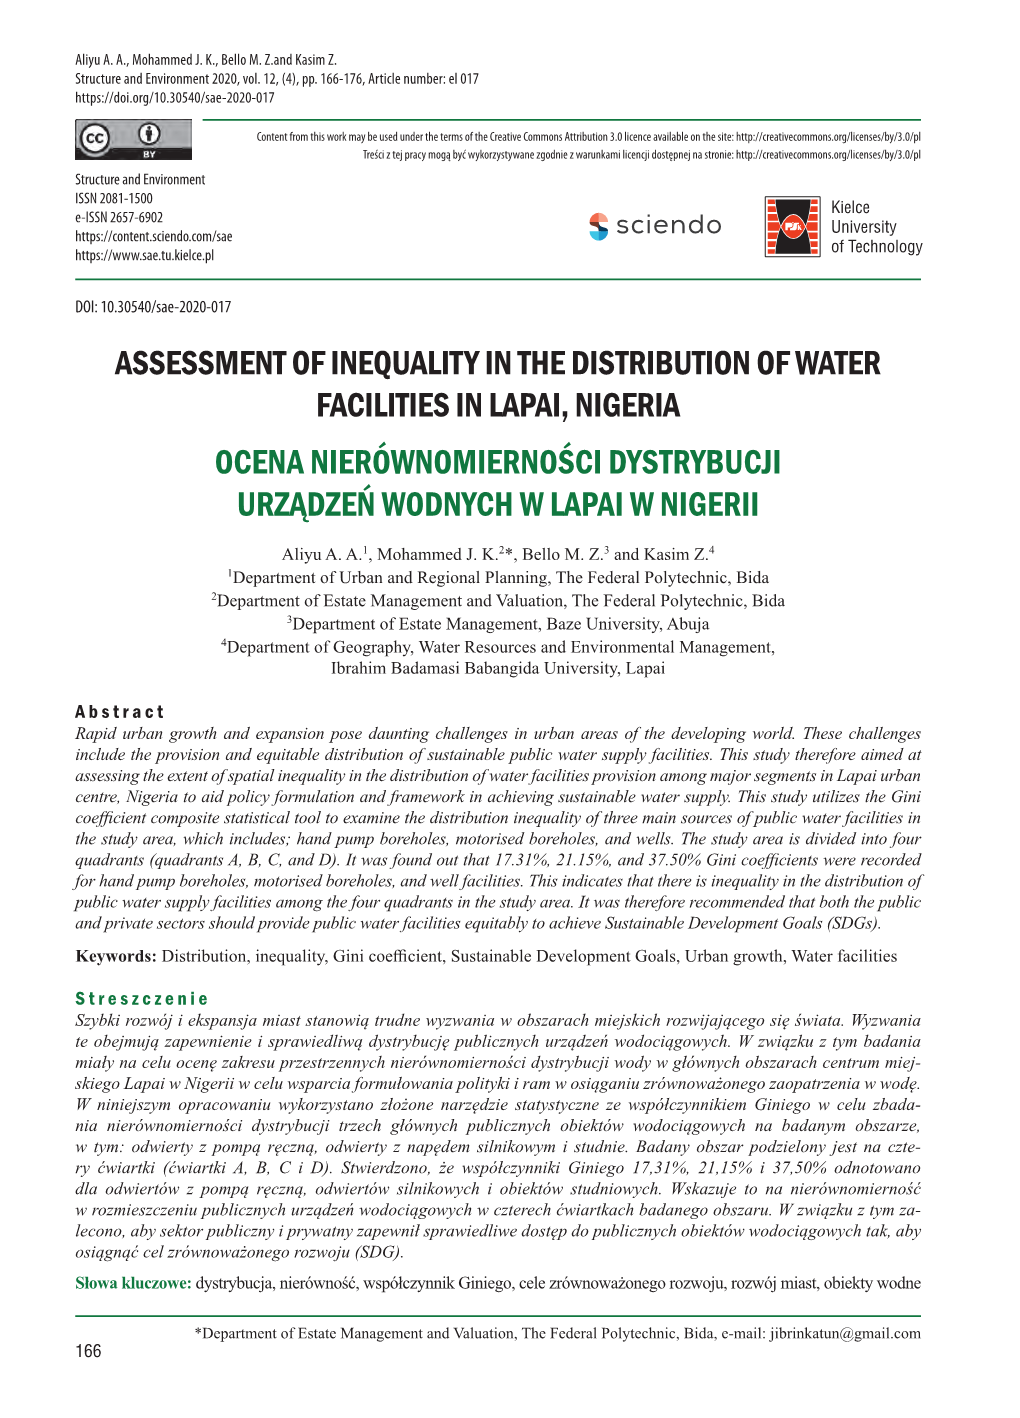 Assessment of Inequality in the Distribution of Water Facilities in Lapai, Nigeria Ocena Nierównomierności Dystrybucji Urządzeń Wodnych W Lapai W Nigerii